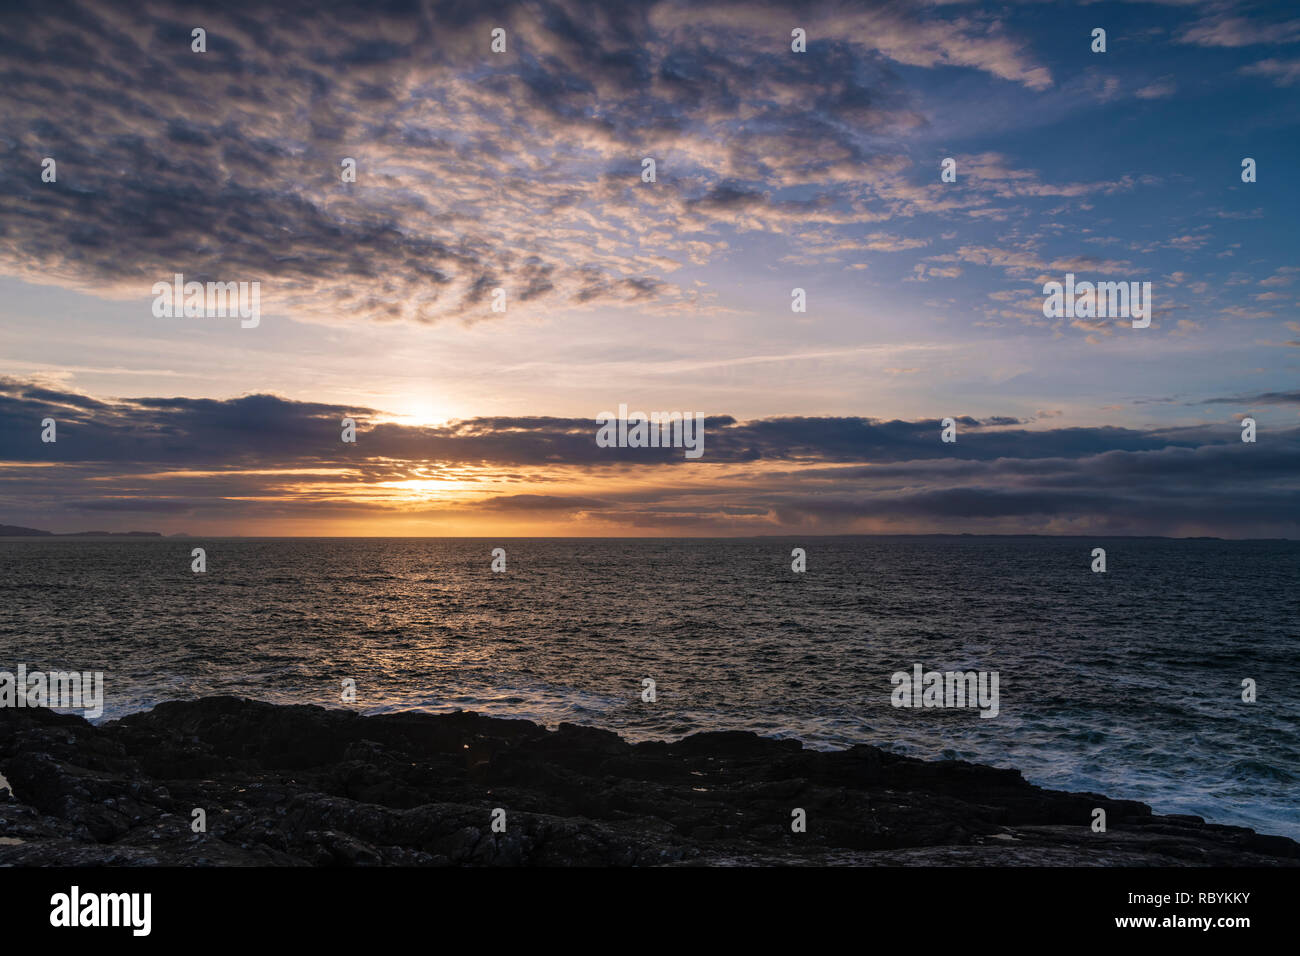 Le soleil se couche sur la mer des Hébrides avec l'île de Mull et coll dans la distance, à partir de 38, l'Ecosse. 29 Décembre 2018 Banque D'Images